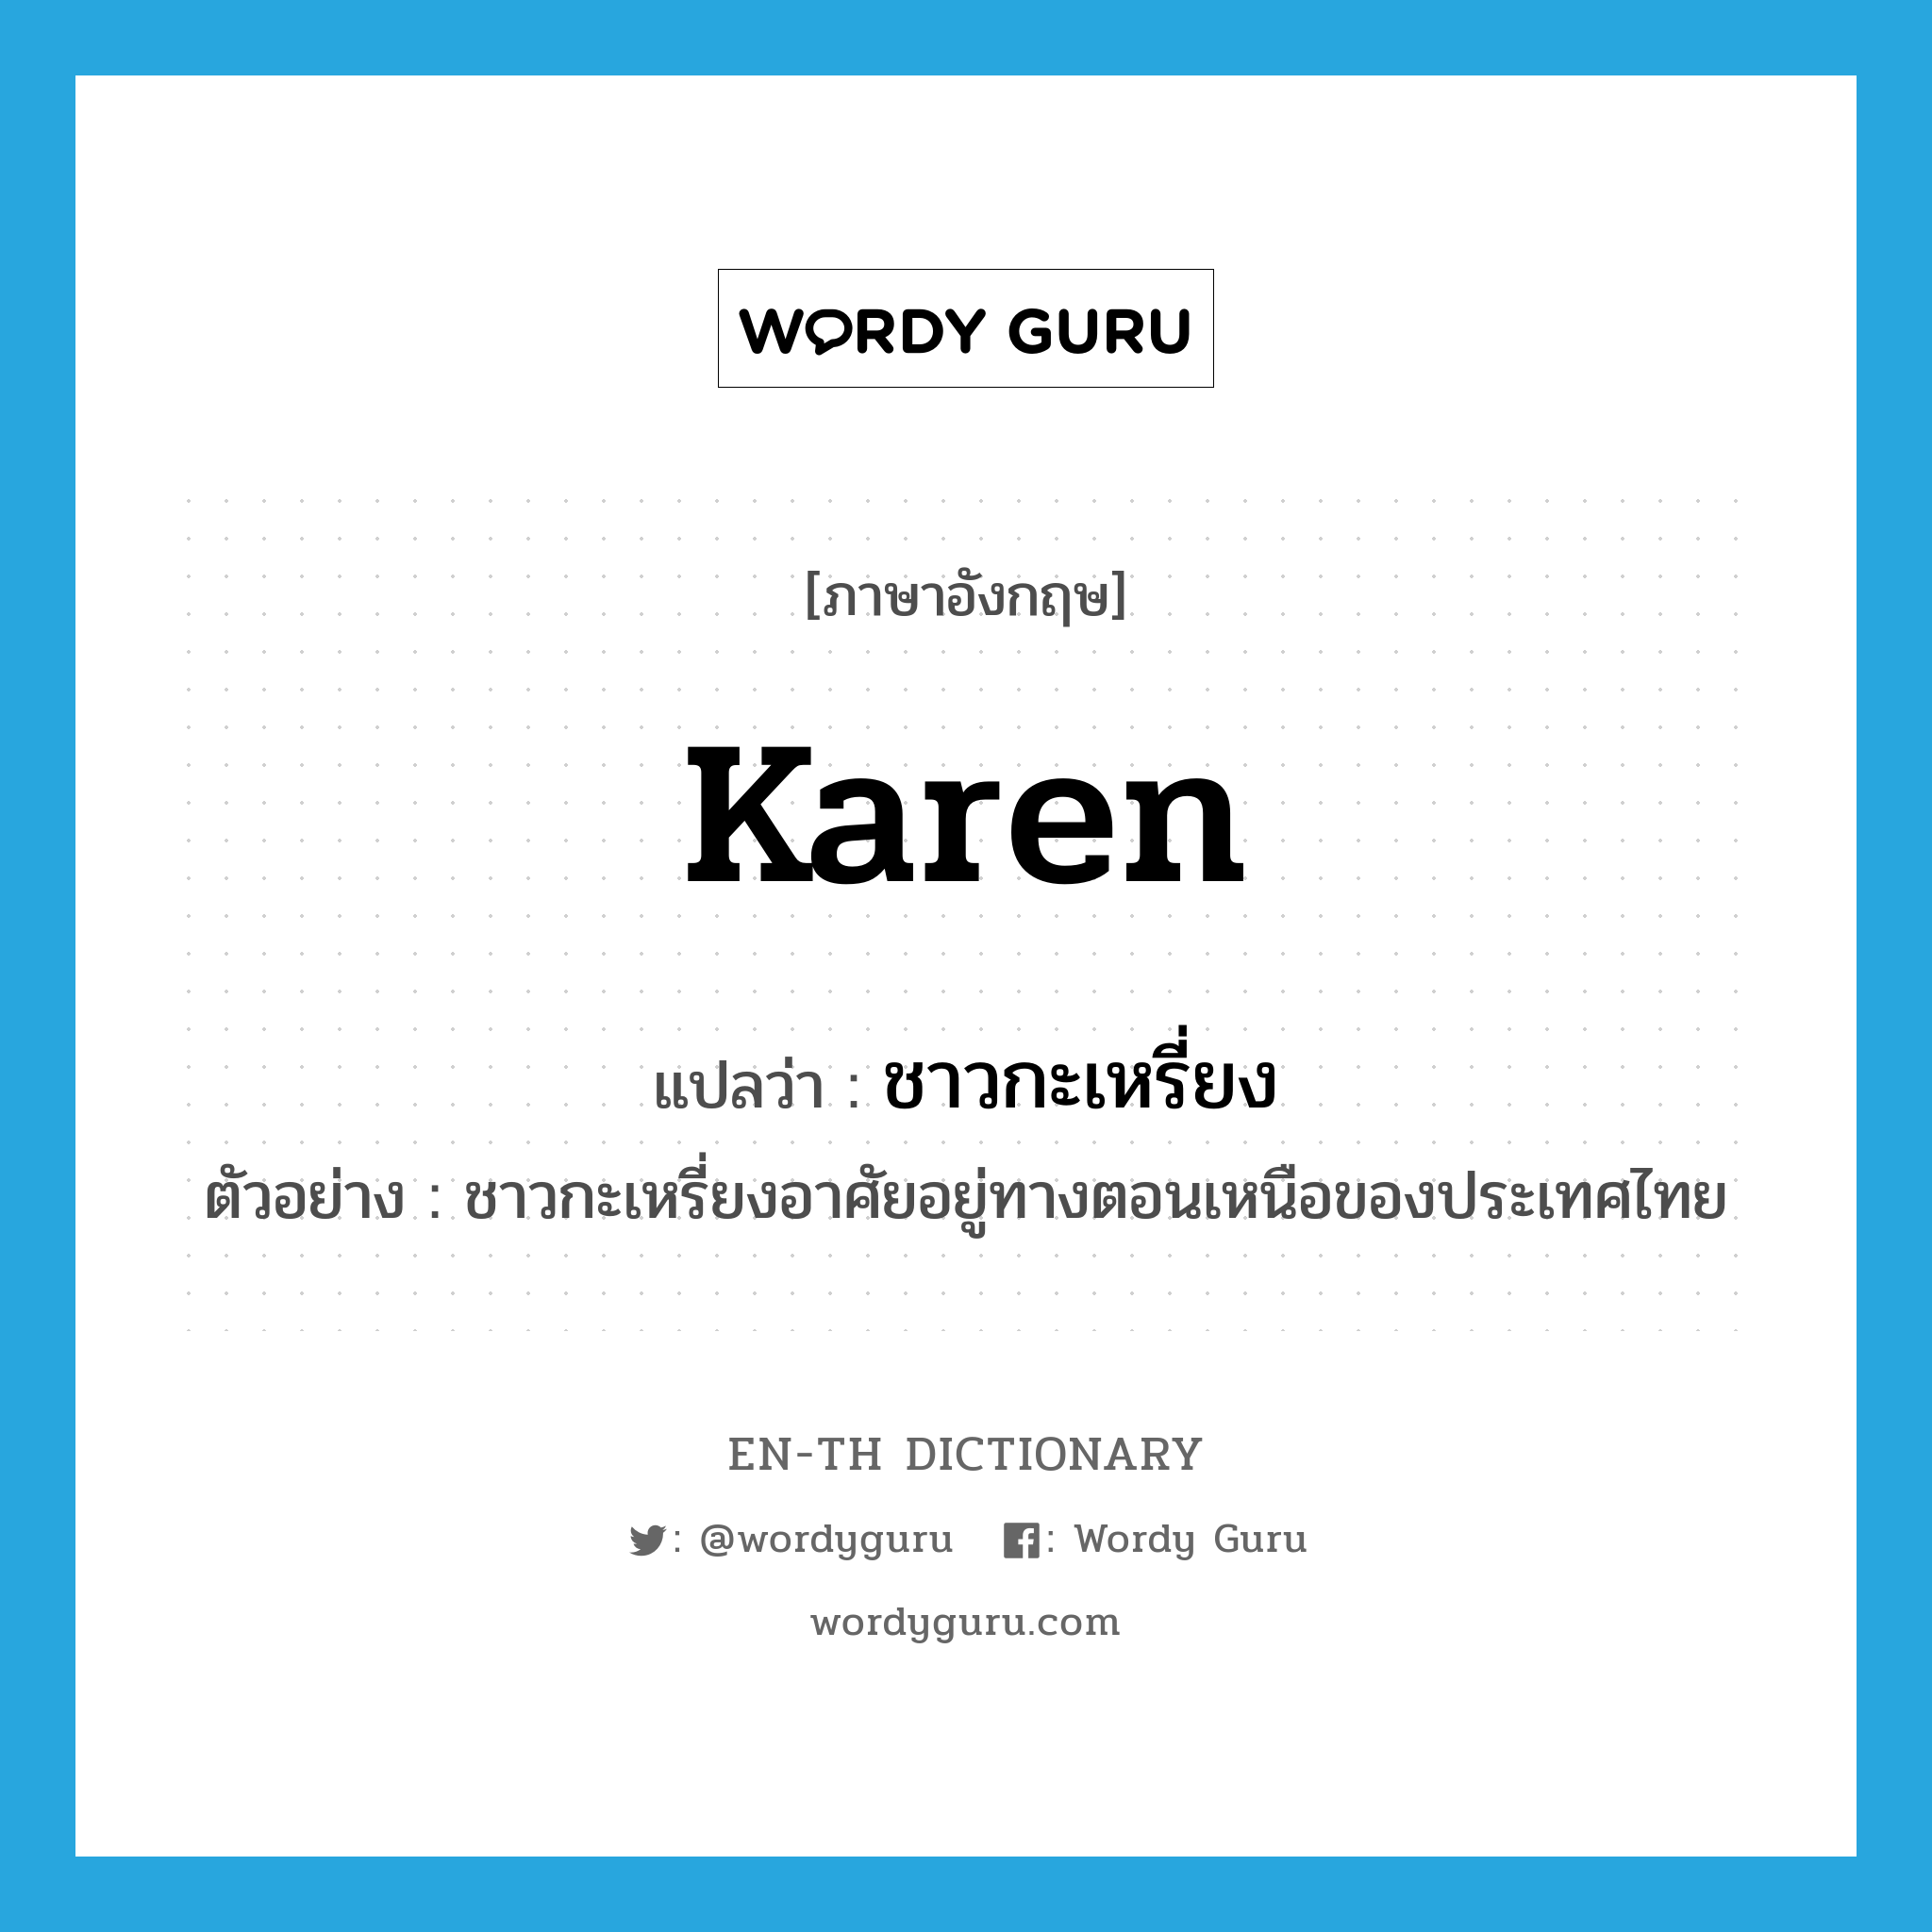 Karen แปลว่า?, คำศัพท์ภาษาอังกฤษ Karen แปลว่า ชาวกะเหรี่ยง ประเภท N ตัวอย่าง ชาวกะเหรี่ยงอาศัยอยู่ทางตอนเหนือของประเทศไทย หมวด N